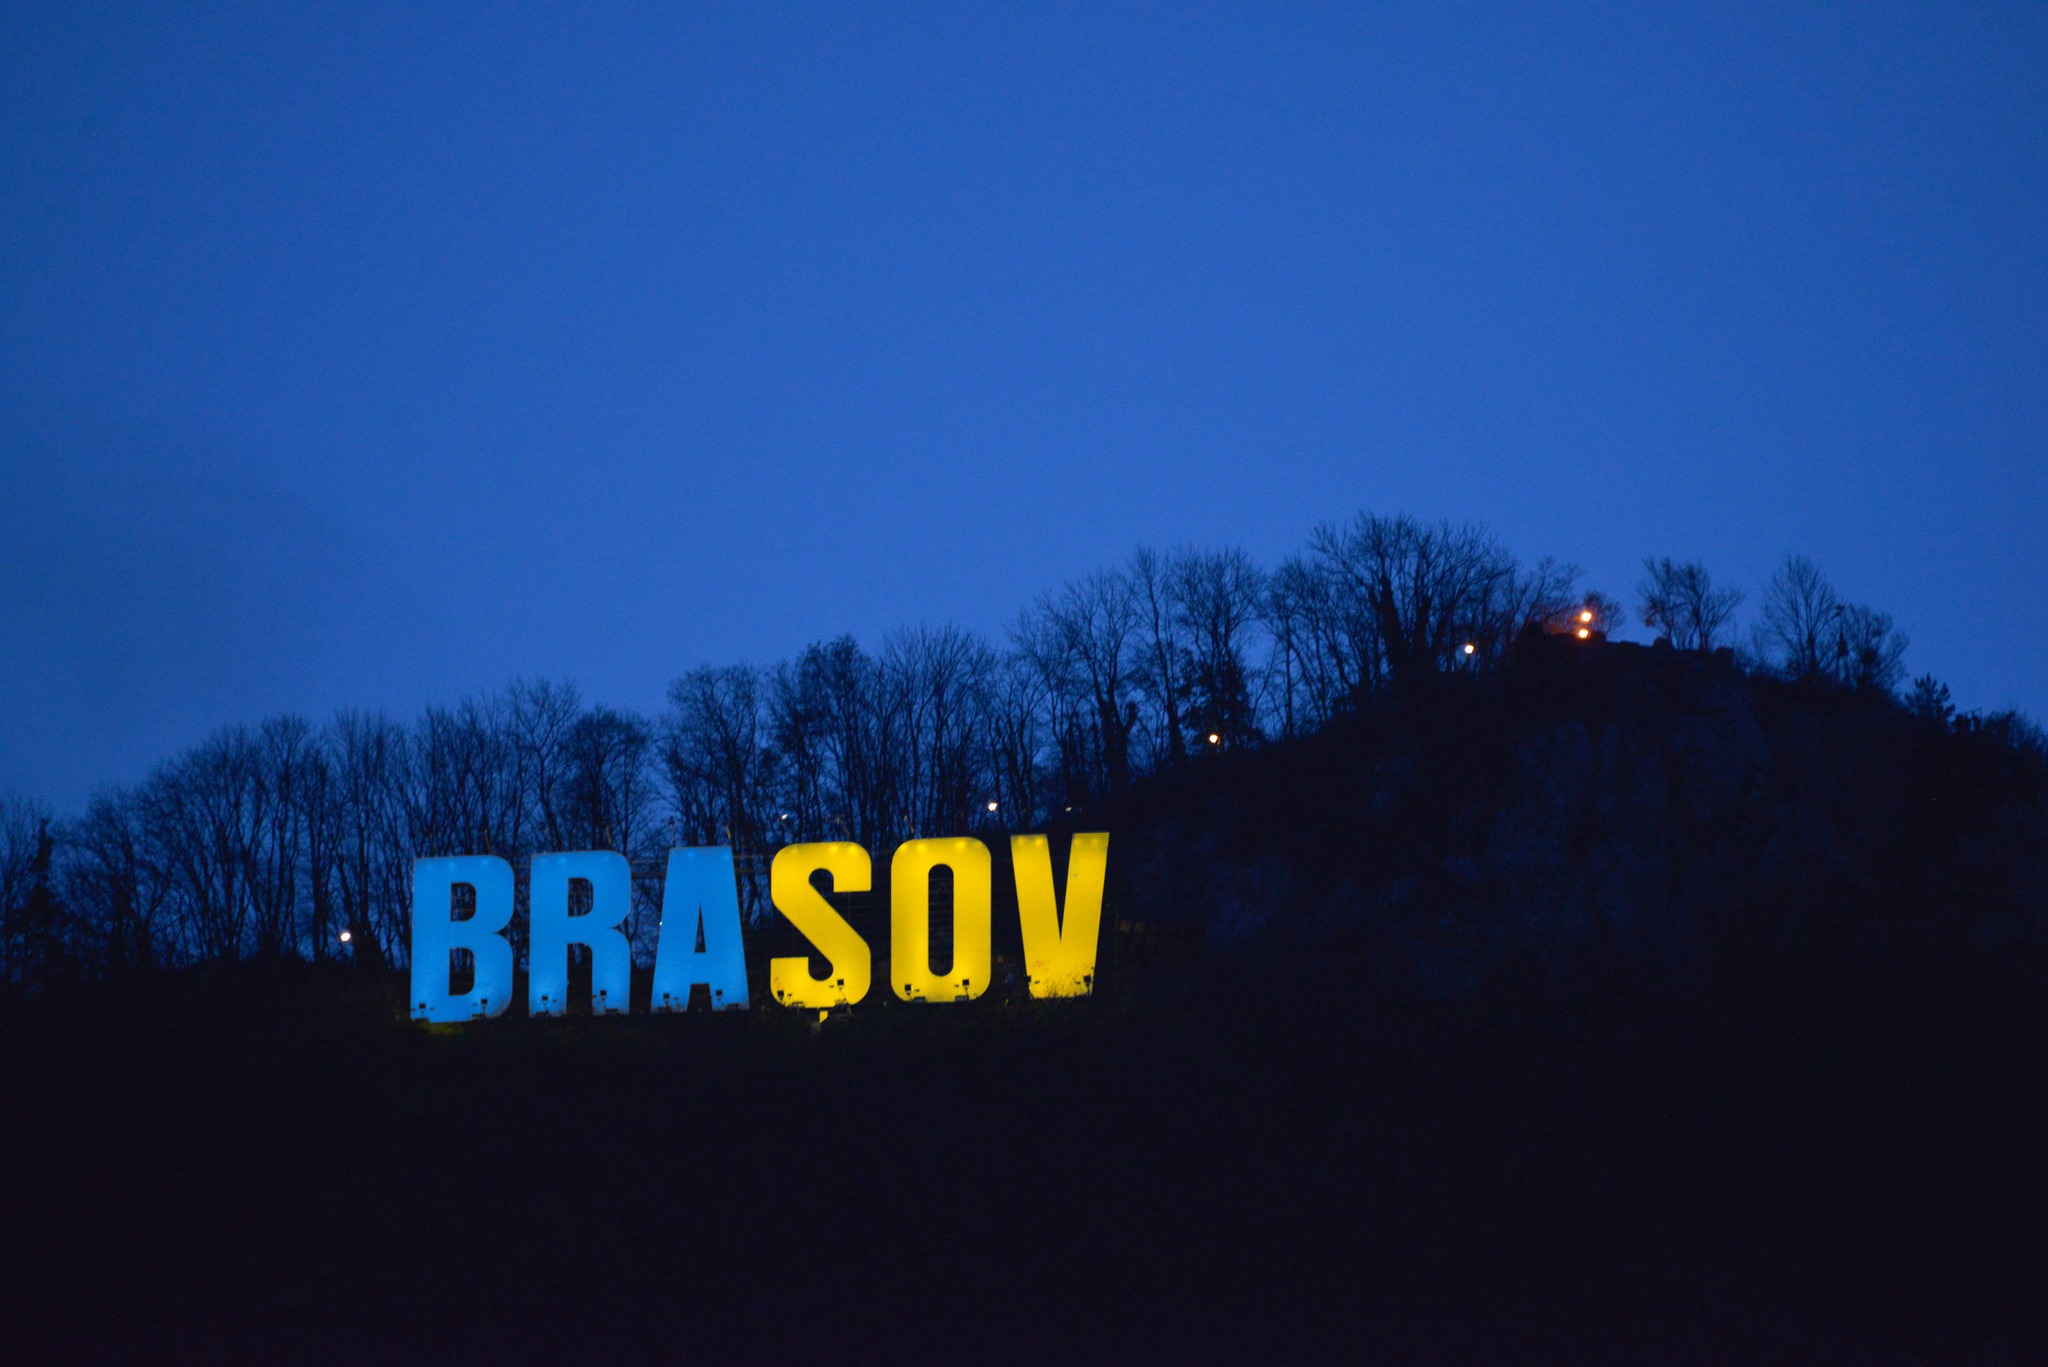 Primăria Municipiului Braşov : Literele de pe Tâmpa și clădirea Primăriei municipiului Brașov vor fi iluminate în culorile albastru și galben, marți și miercuri seară, în semn de solidaritate cu Ucraina